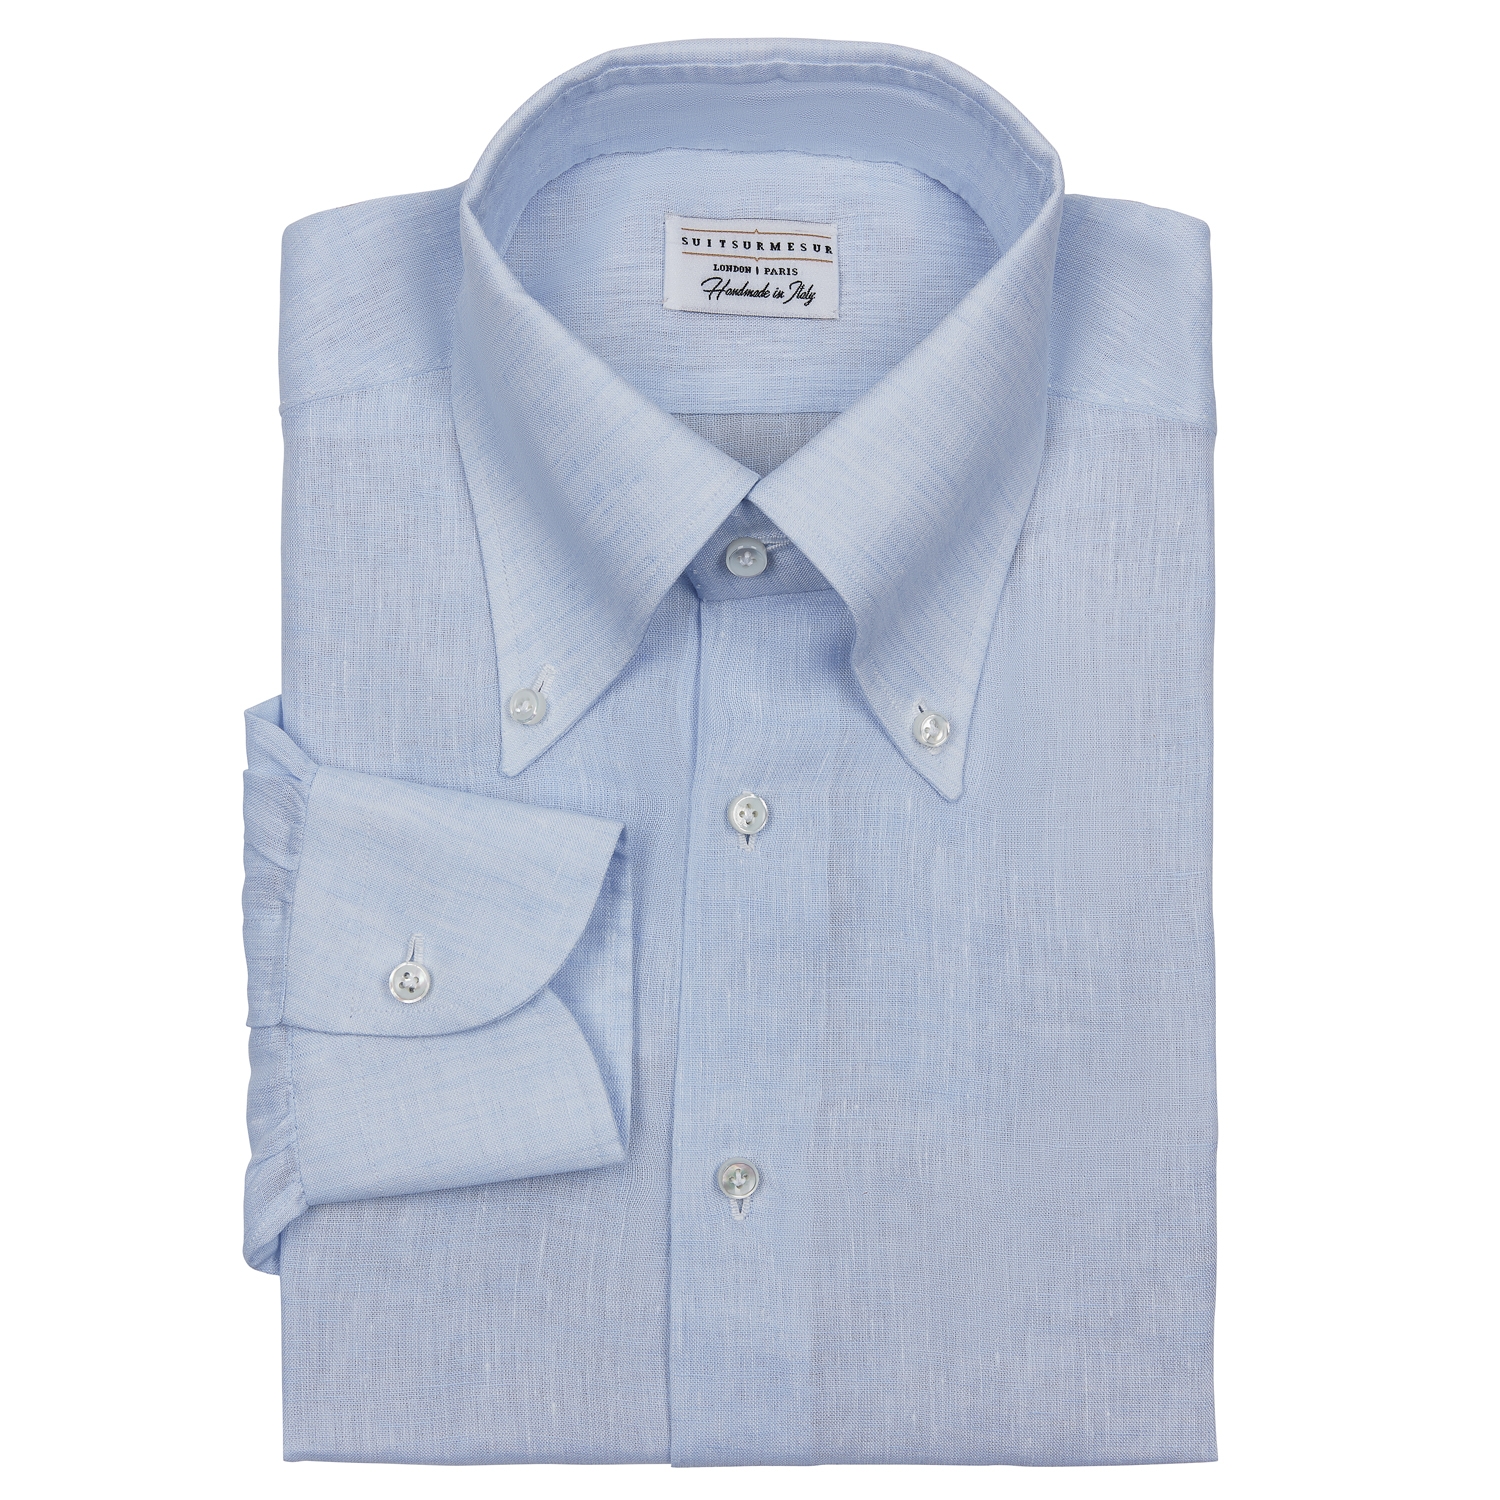 Linen button down collar shirt - Suitsurmesur